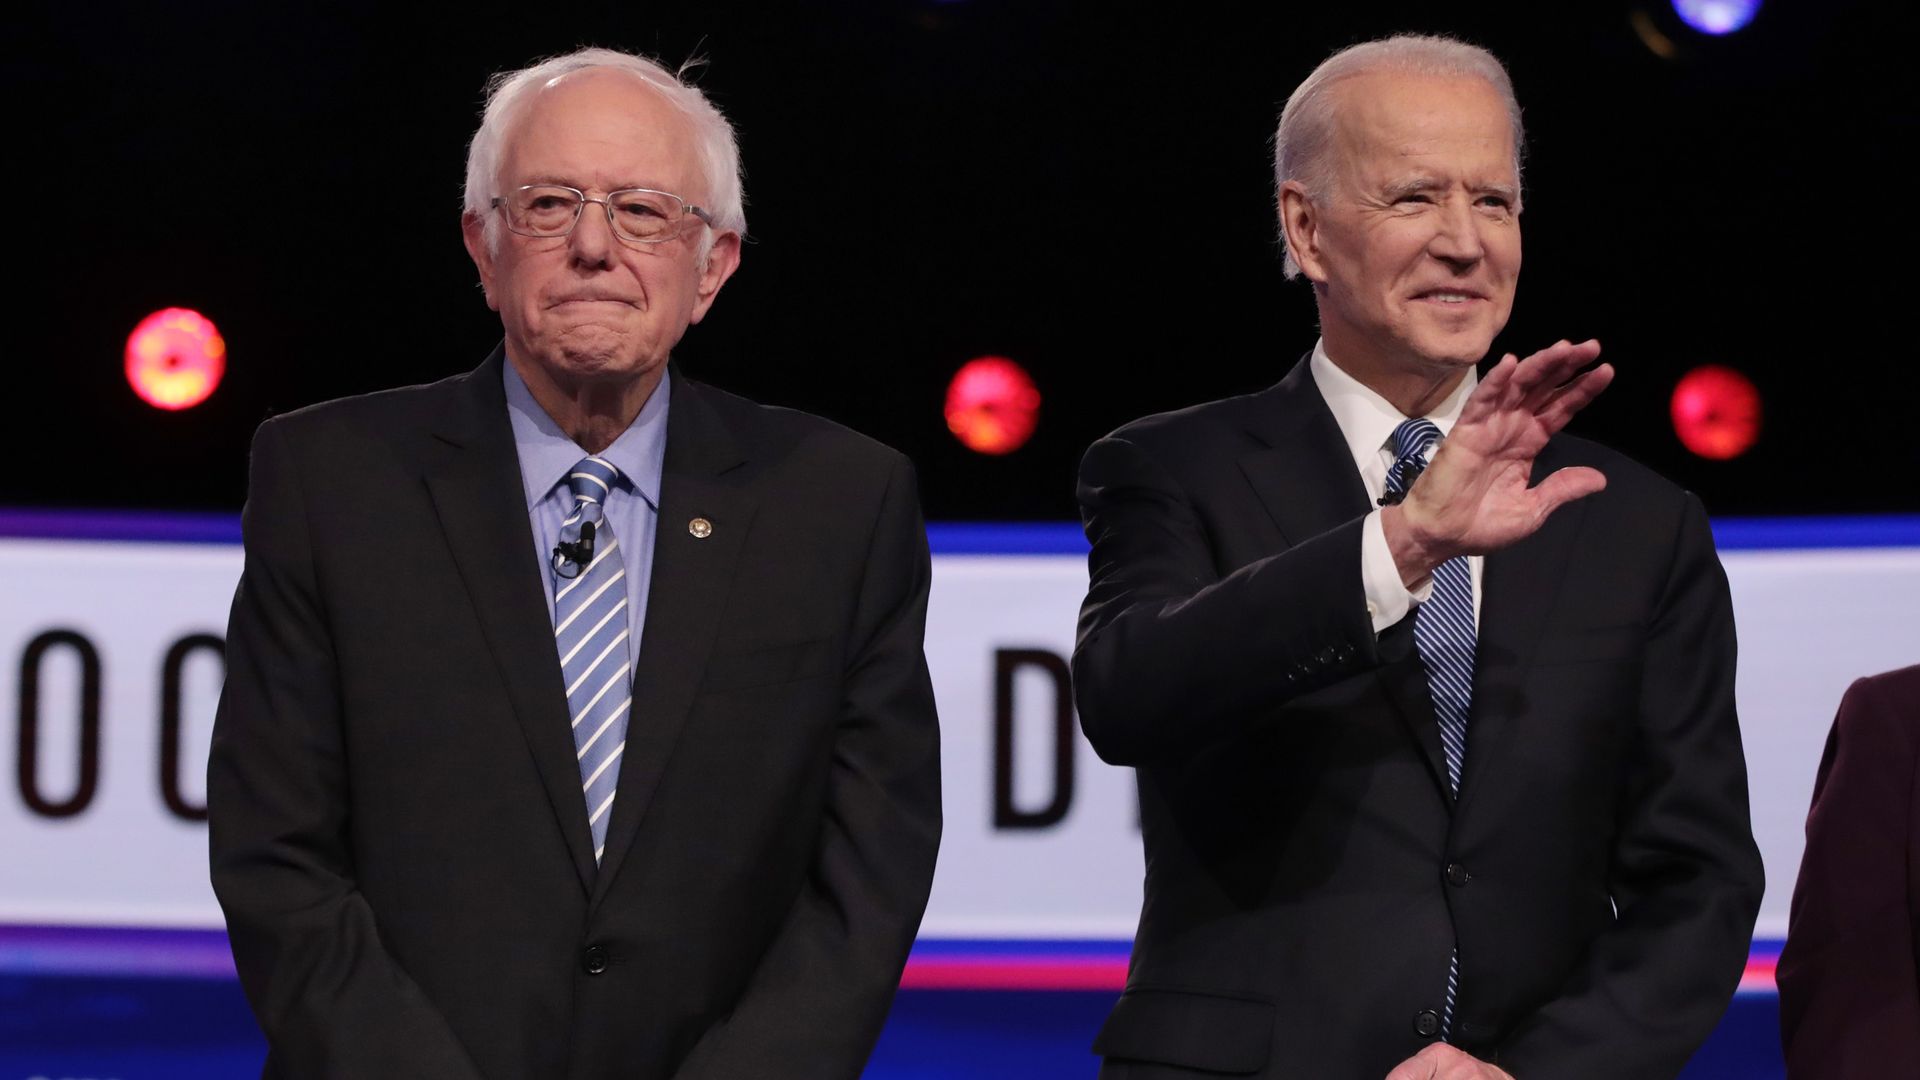 Biden and Sanders on the debate stage. 